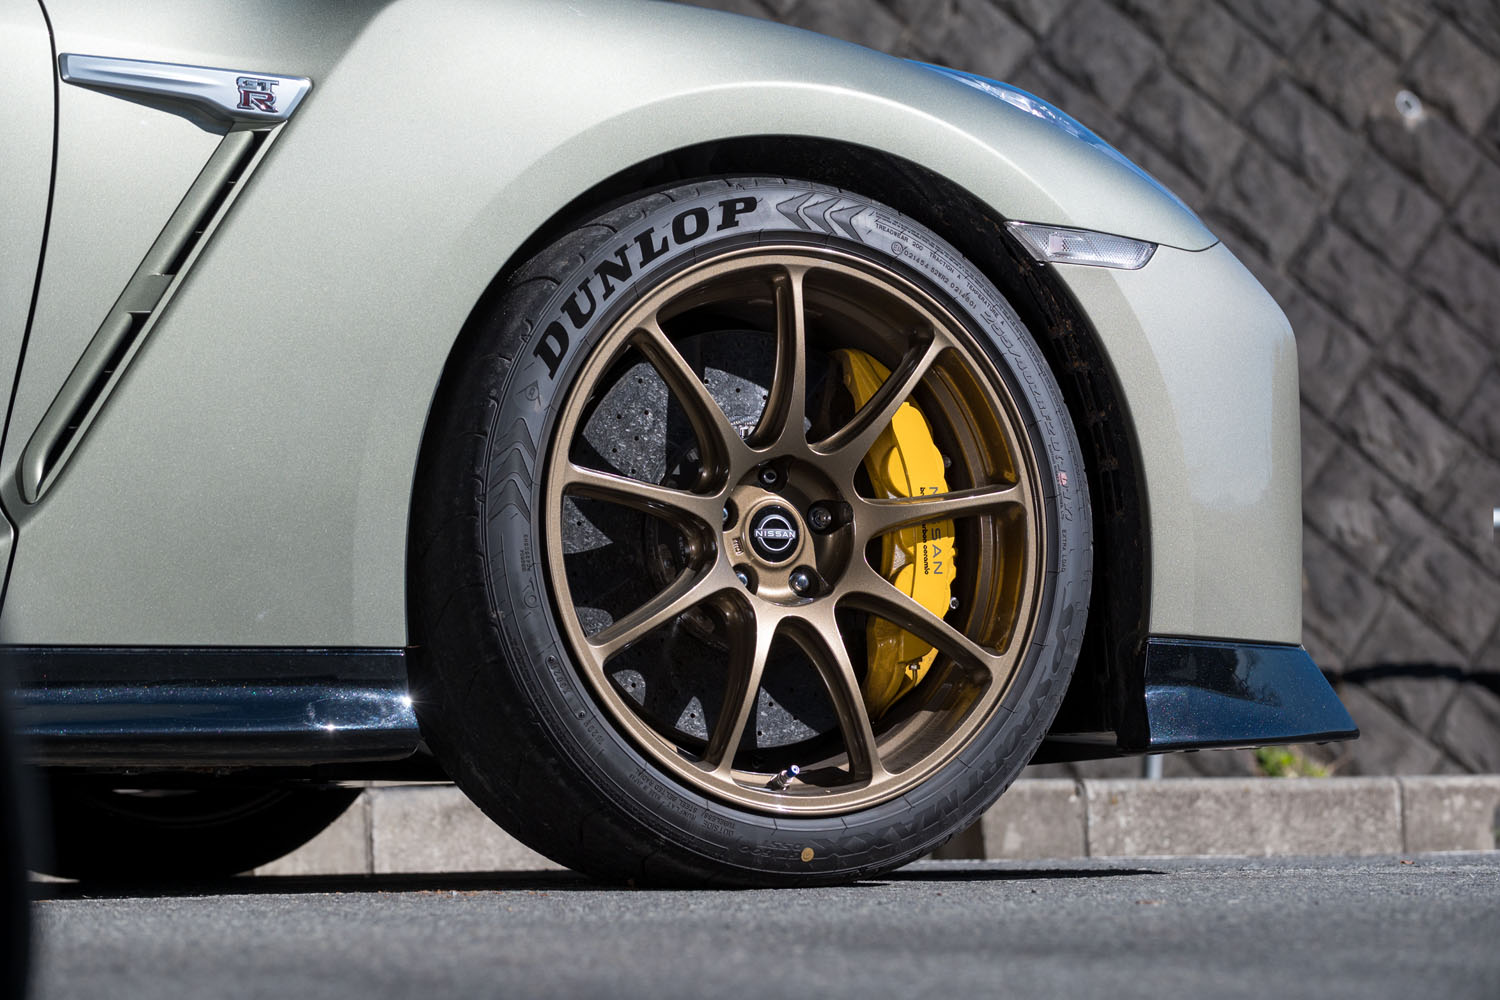 ブロンズ塗装のレイズ製アルミ鍛造ホイール。10Jというフロントホイールの幅は「トラックエディションengineered by NISMO」と同じで、タイヤの高剛性化が図られている。